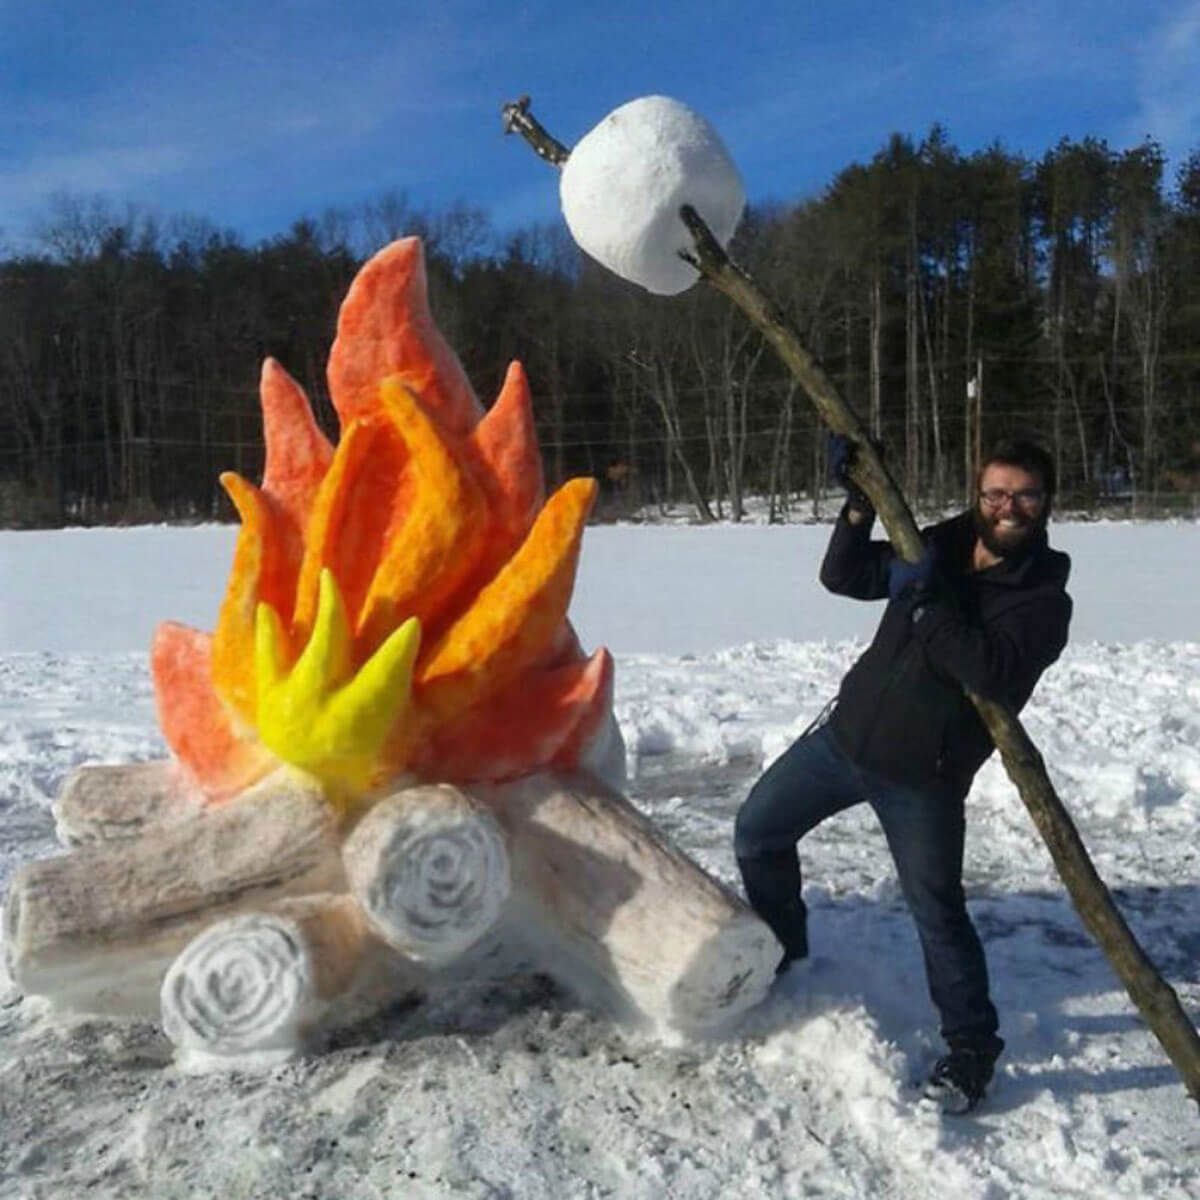 snow-sculpture-art-winter-1.jpg